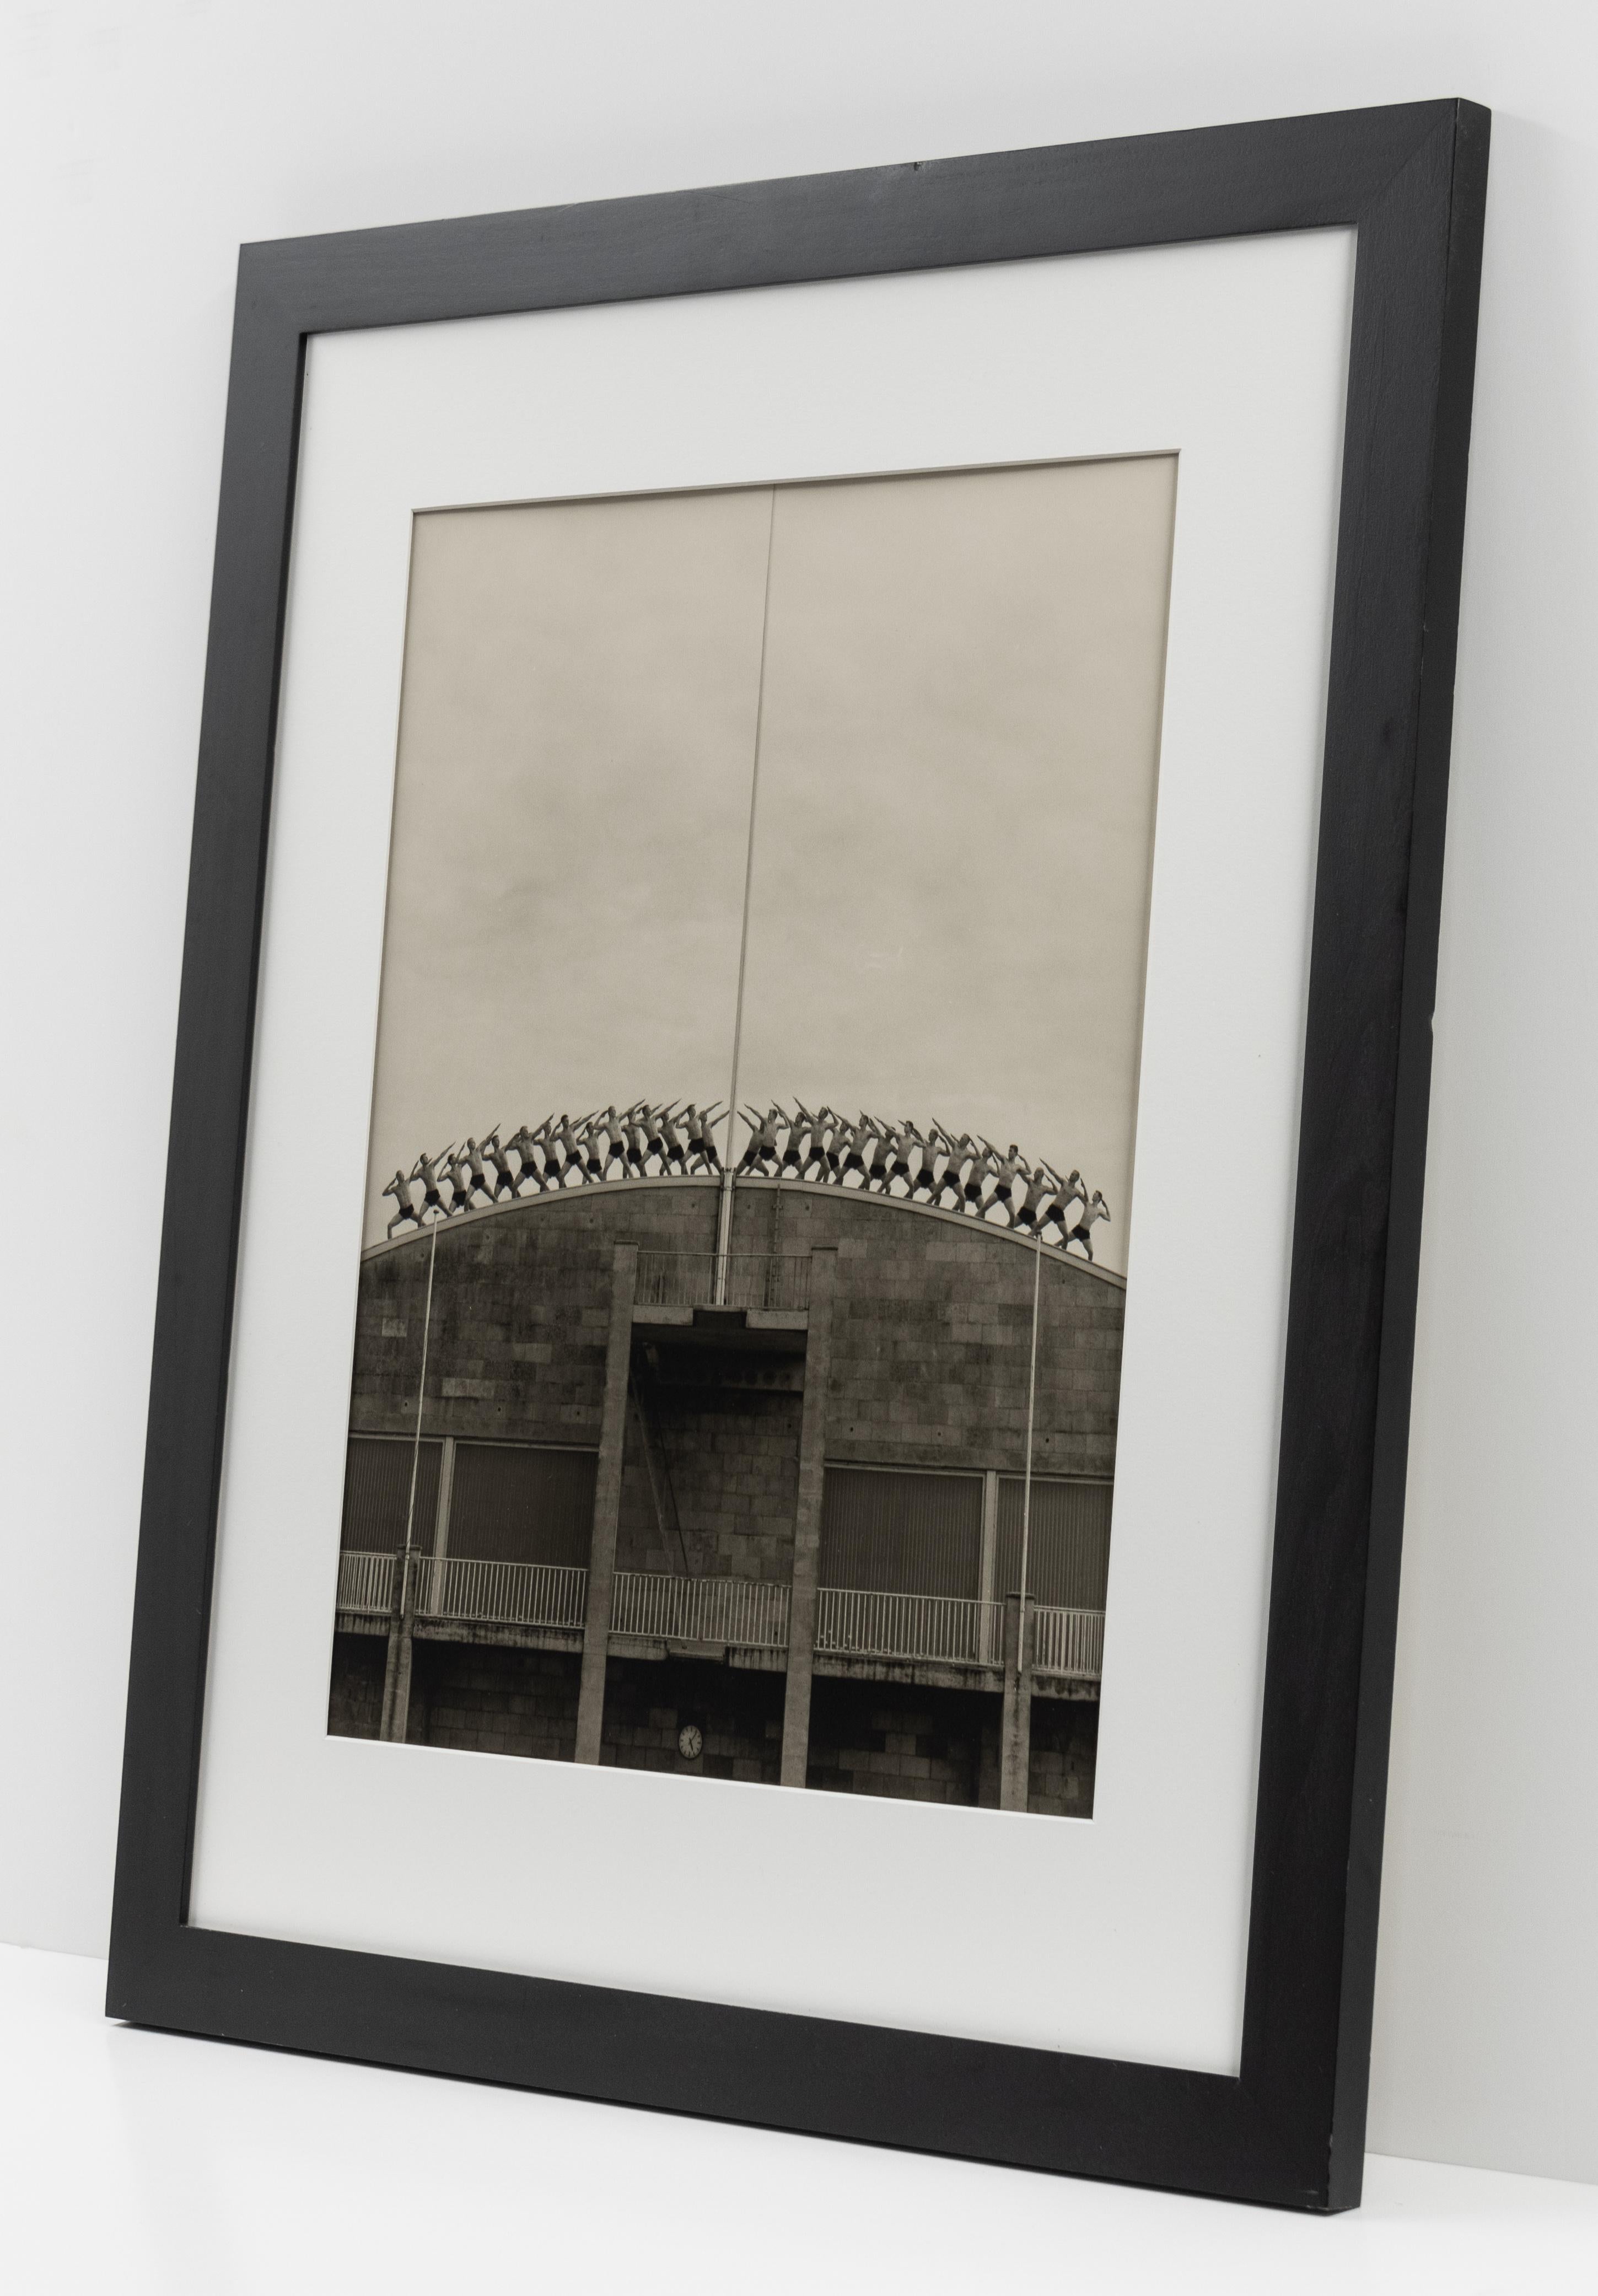 Diese Schwarz-Weiß-Fotografie von Anderson & Low wird von CLAMP in New York City angeboten.

Bisse #2
2000/2001

Signiert mit Bleistift, verso

Gelatinesilberdruck (Auflage: 25)

20 x 16 Zoll (50,8 x 40,6 cm), Blatt

